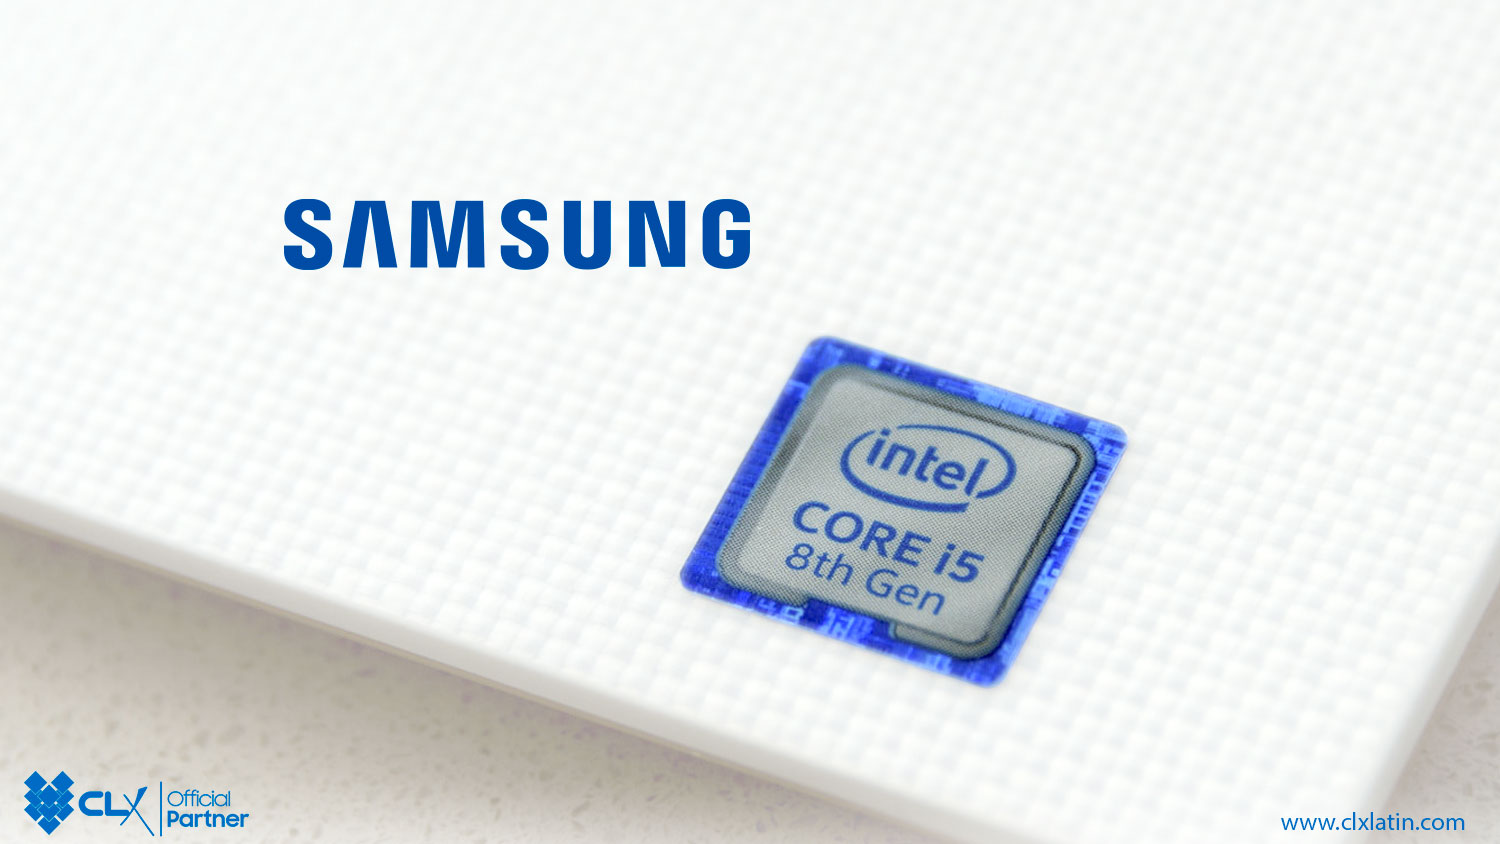 CPUS Intel de Samsung